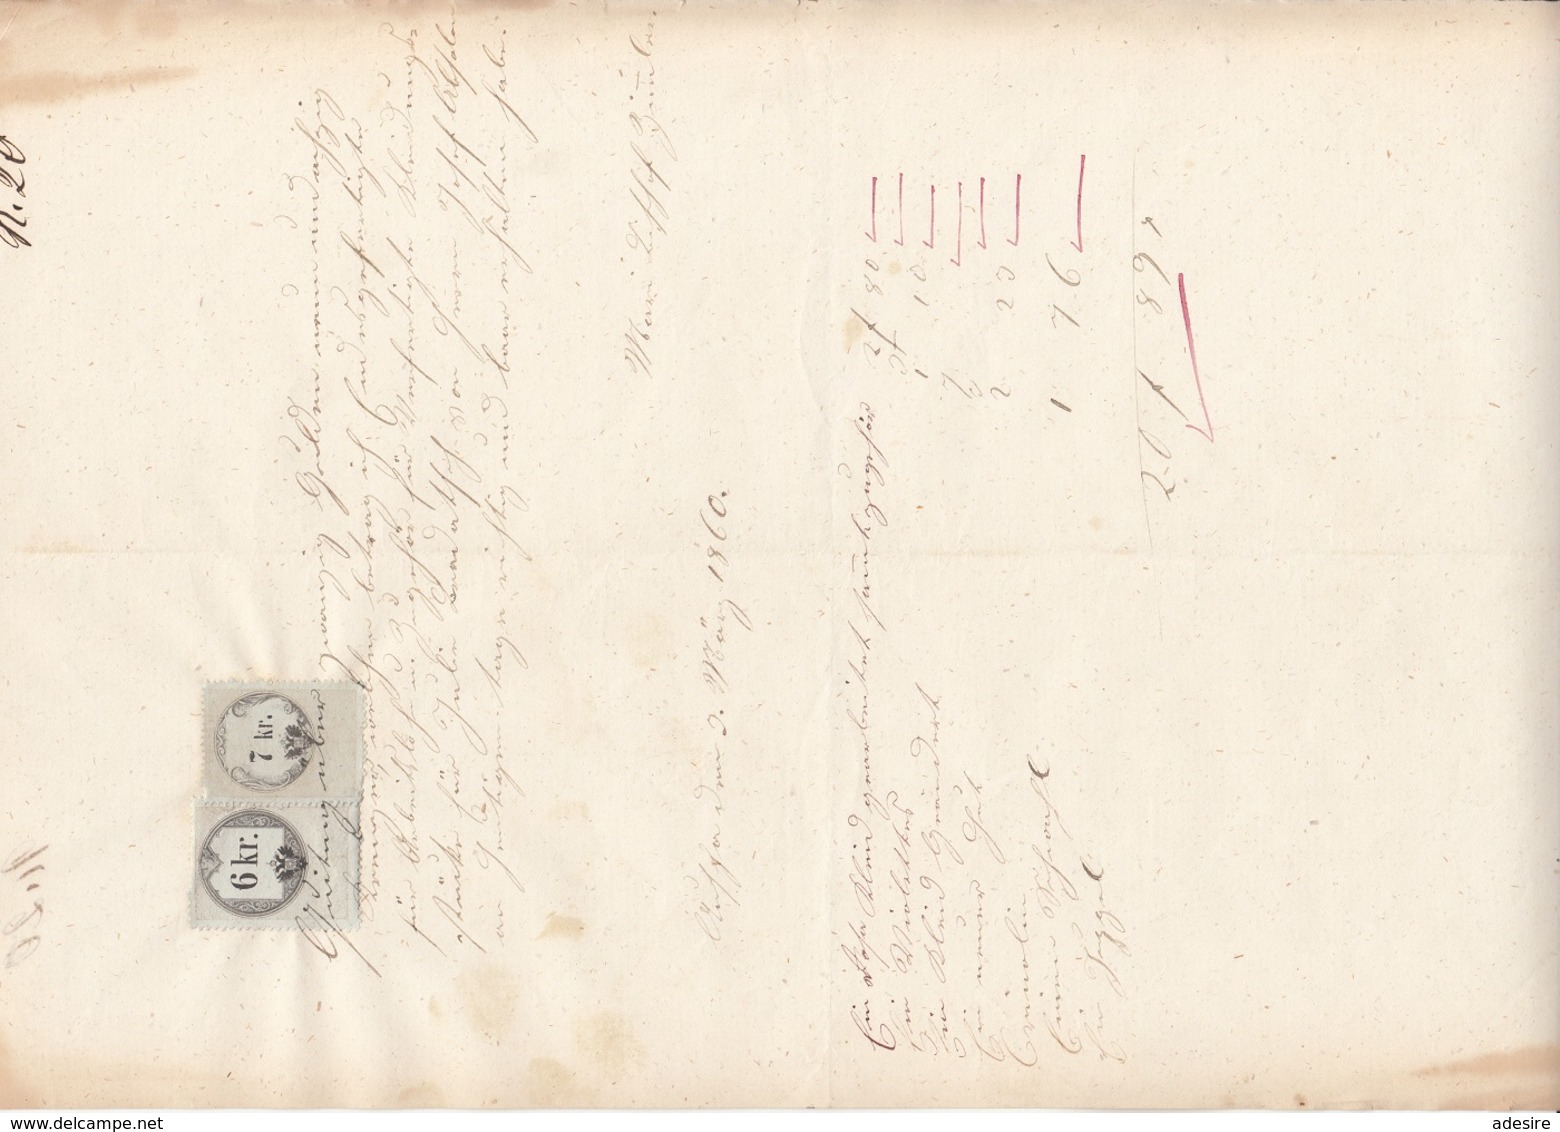 QUITTUNG 1860 - Handgeschrieben Rechnung Mit 6 + 7 Kreuzer Stempelmarke, A3 Format, Gefaltet, Gebrauchsspuren - Österreich